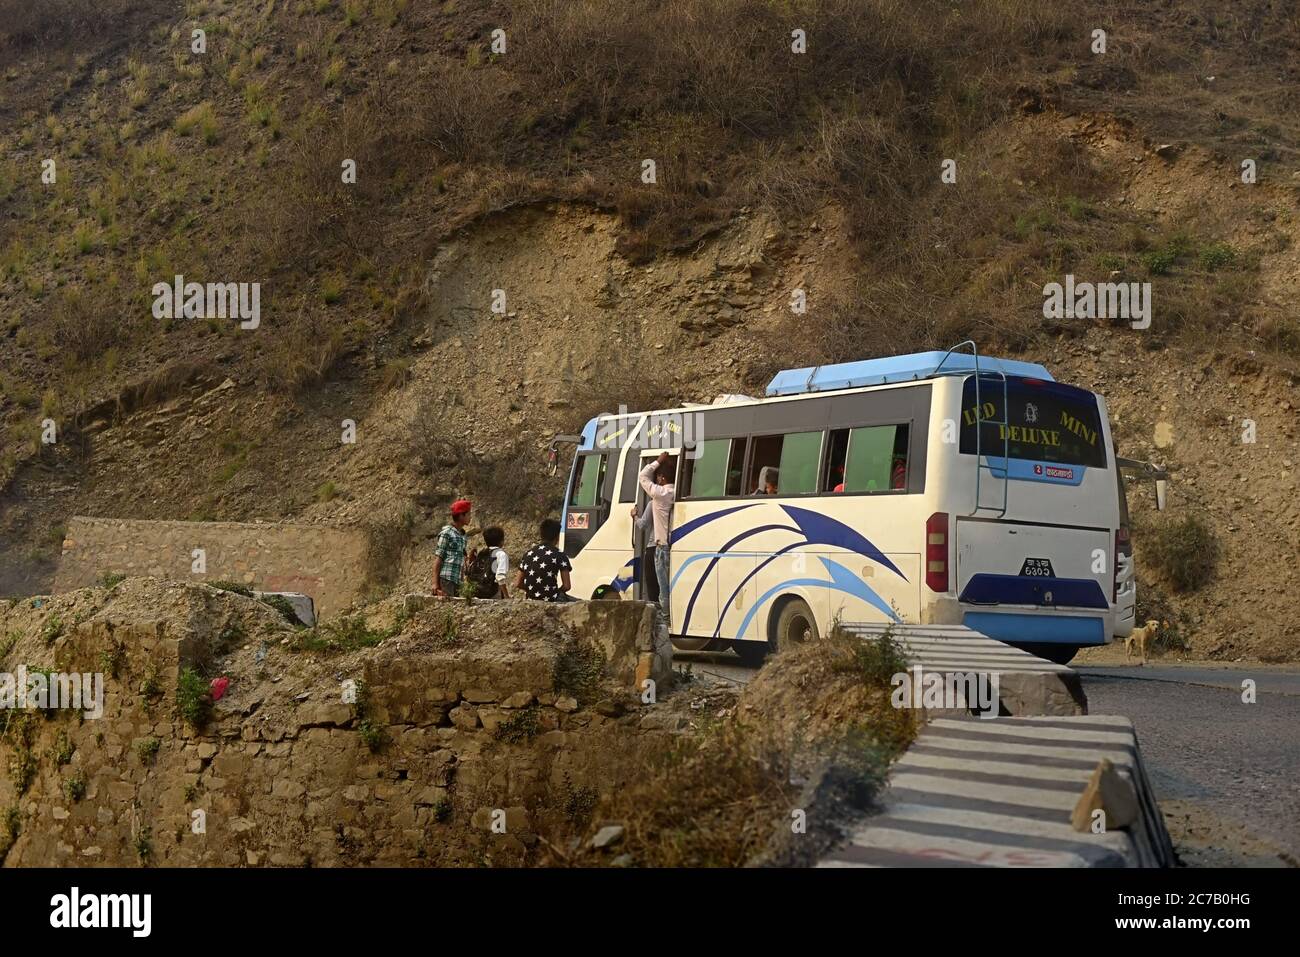 Ein Bus, der Passagiere auf einer Straße abholt, die Pokhara und Kathmandu verbindet – ein Teil von Nepals Strategic Road Network (SRN) –, die an einem steilen Hang am Rande des Kathmandu-Tals, am Stadtrand von Kathmandu City, Nepal, liegt. Archivfoto (2016). Das Straßennetz in Nepal erlitt durch das Erdbeben von 2015 mäßige Schäden. Die geschätzten Schäden für das strategische Straßennetz (SRN) betrugten 45.9 Millionen US-Dollar, während die Gesamtverluste bei 5.26 Millionen US-Dollar lagen. Auf dem lokalen Straßennetz (LRN) betrug der geschätzte Gesamtschäden 124.85 Millionen USD, während der Gesamtschäden 42.74 Millionen USD betrug. Stockfoto